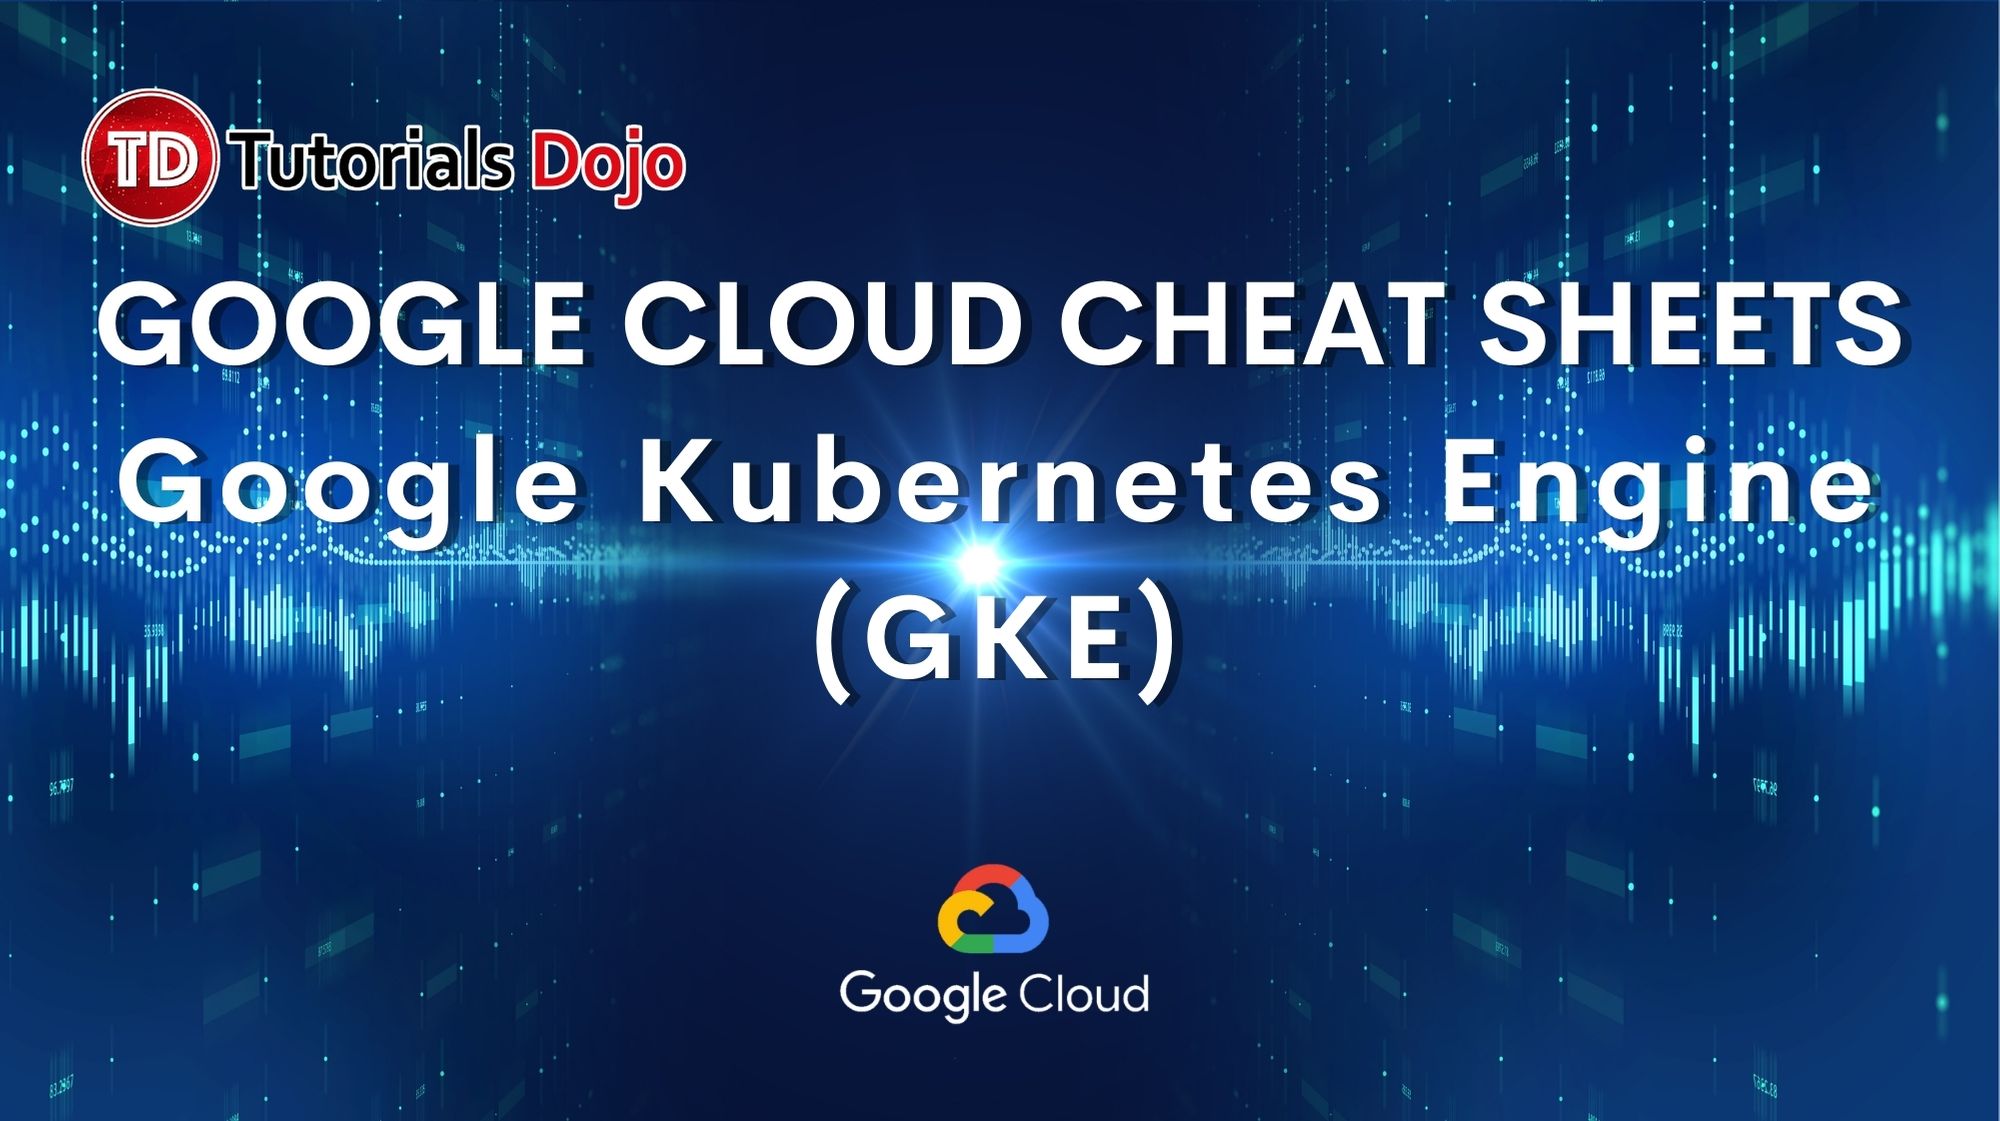 Google Kubernetes Engine (GKE)